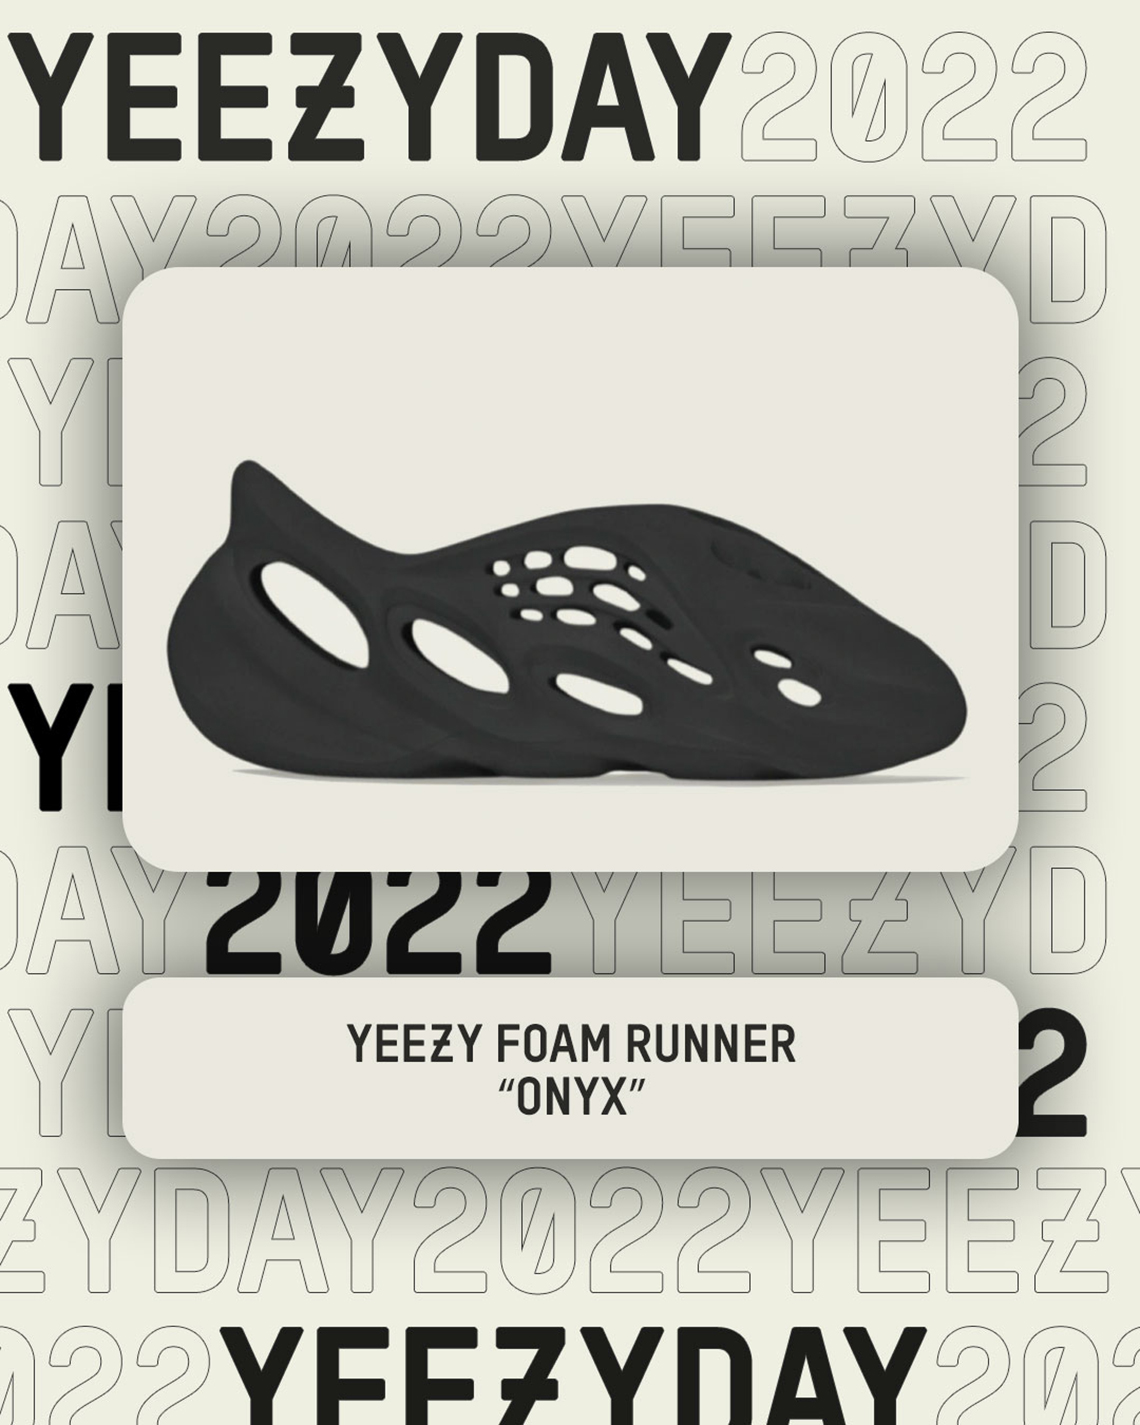 Yeezy Day 2022 damske teplaky adidas essentials 3s pant Onyx 1